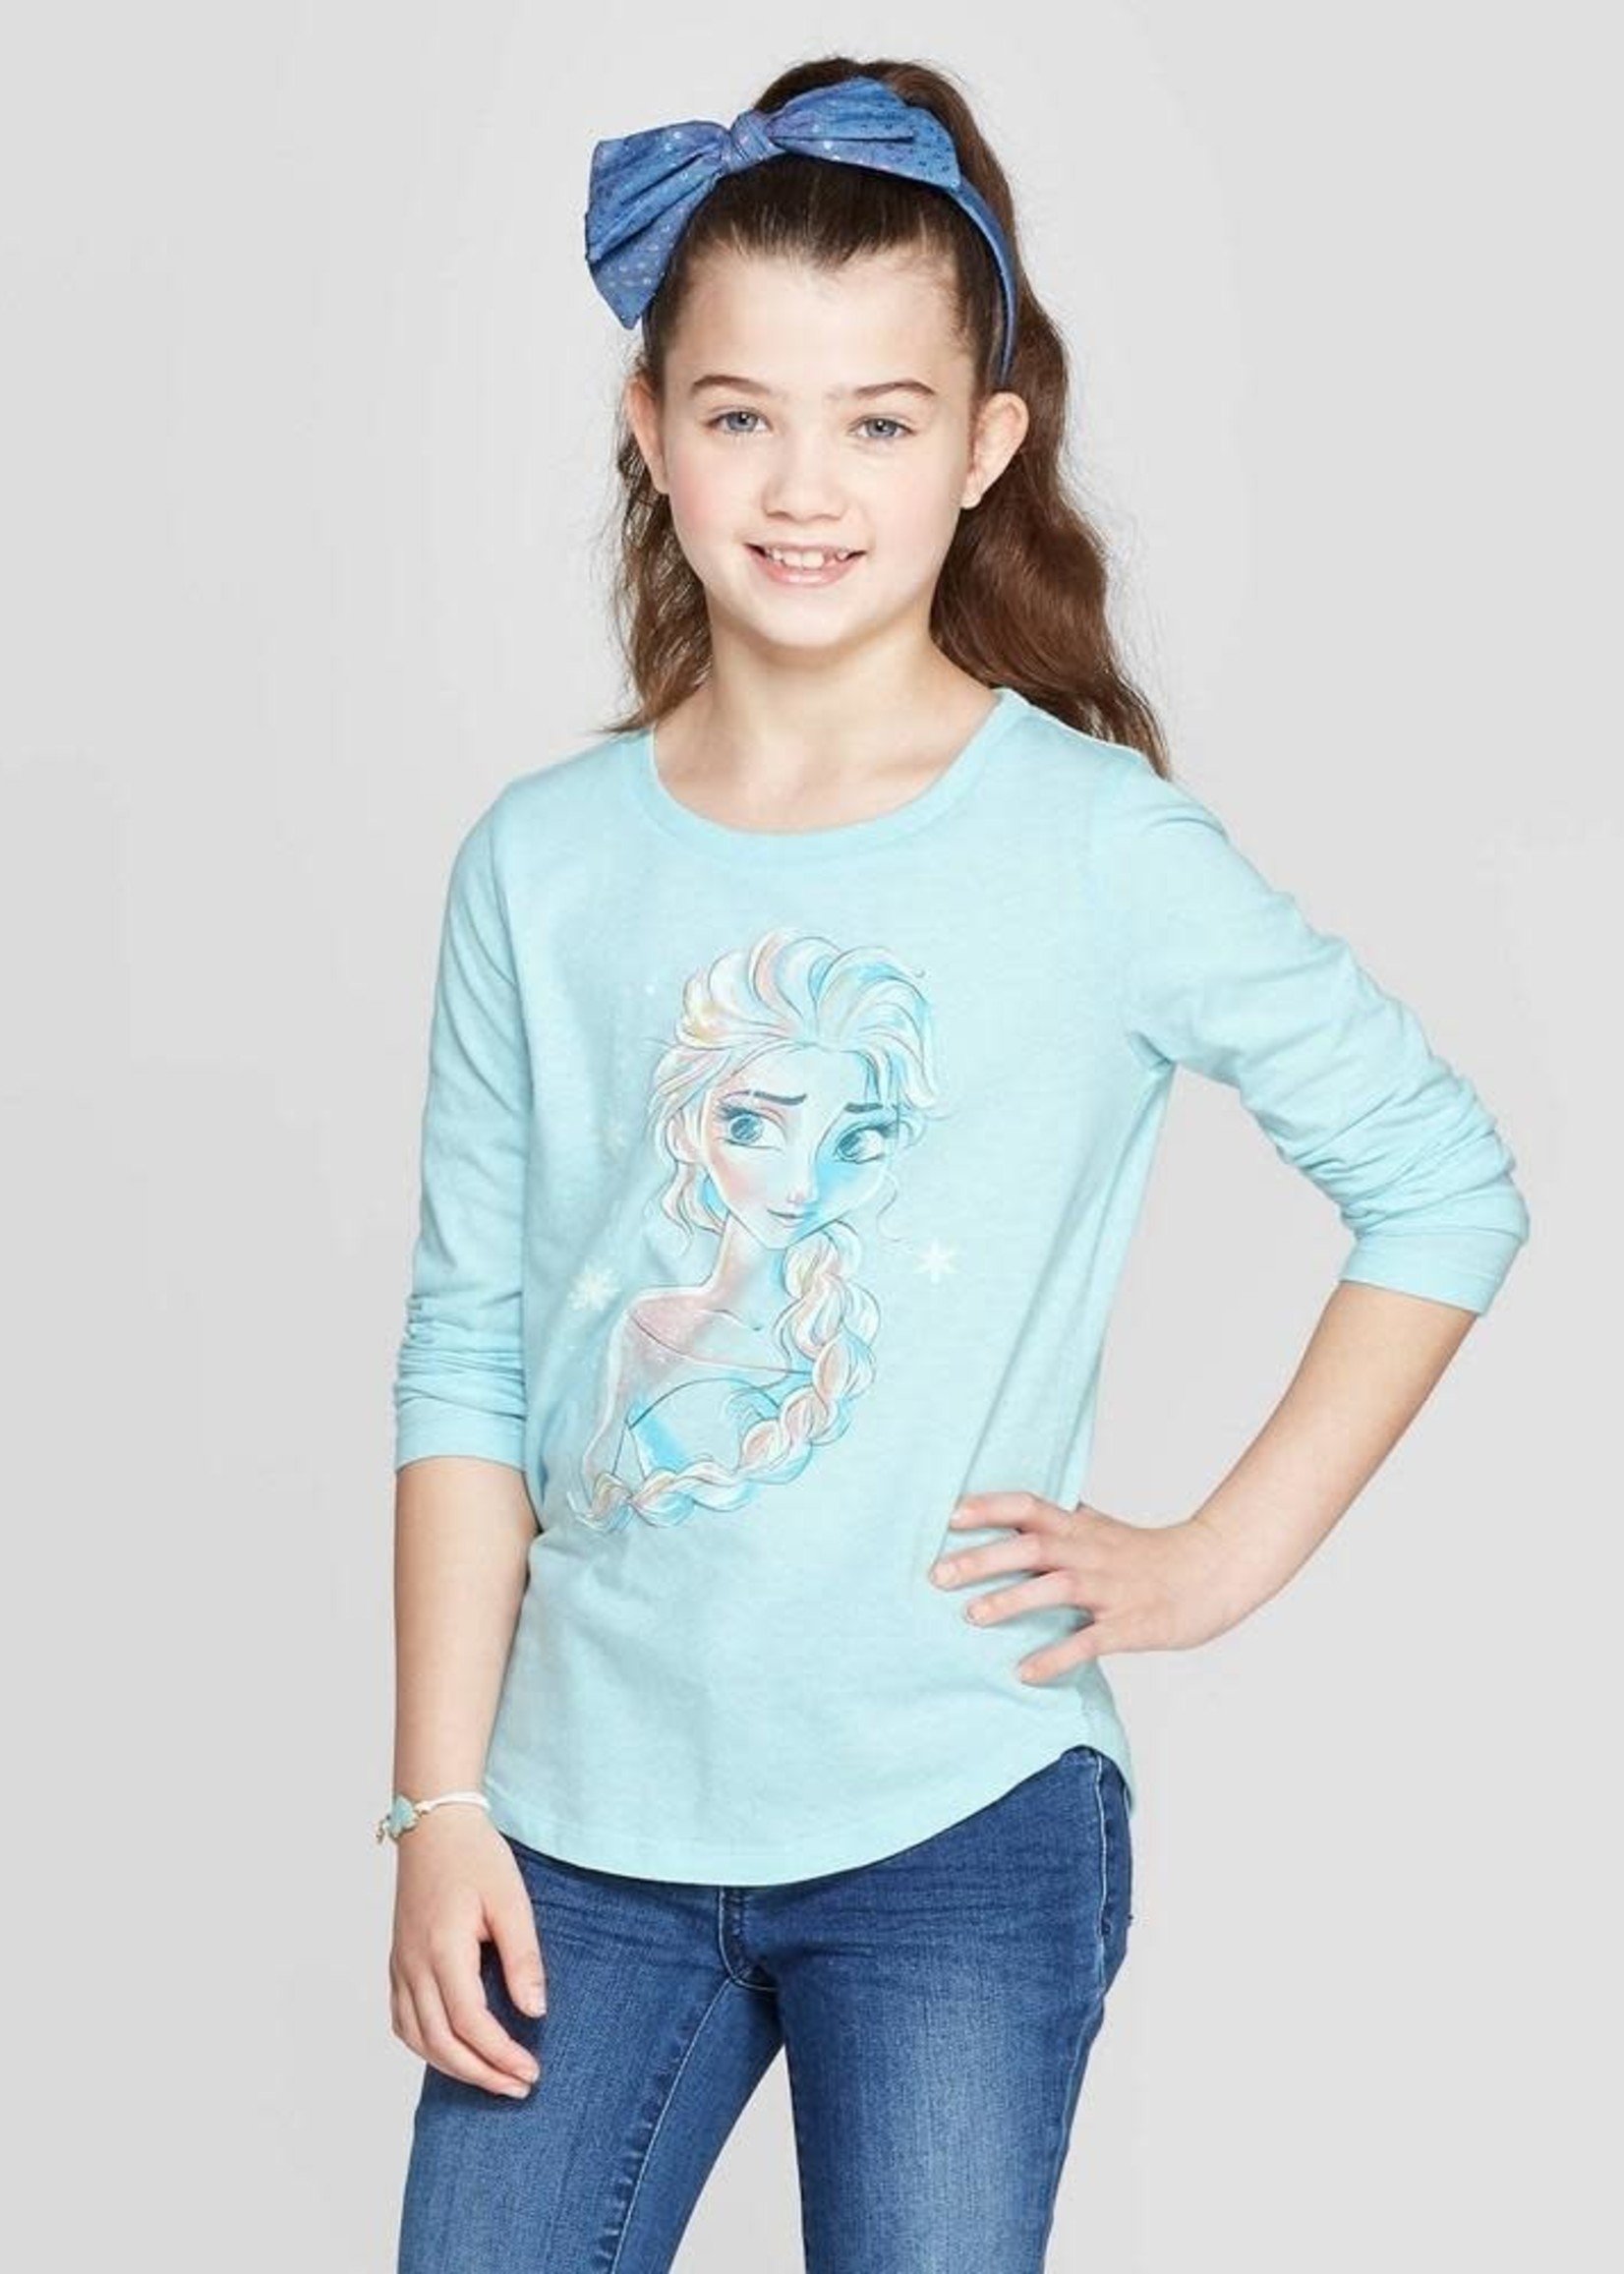 Girls' Frozen Elsa Long Sleeve T-Shirt - Light Blue XL